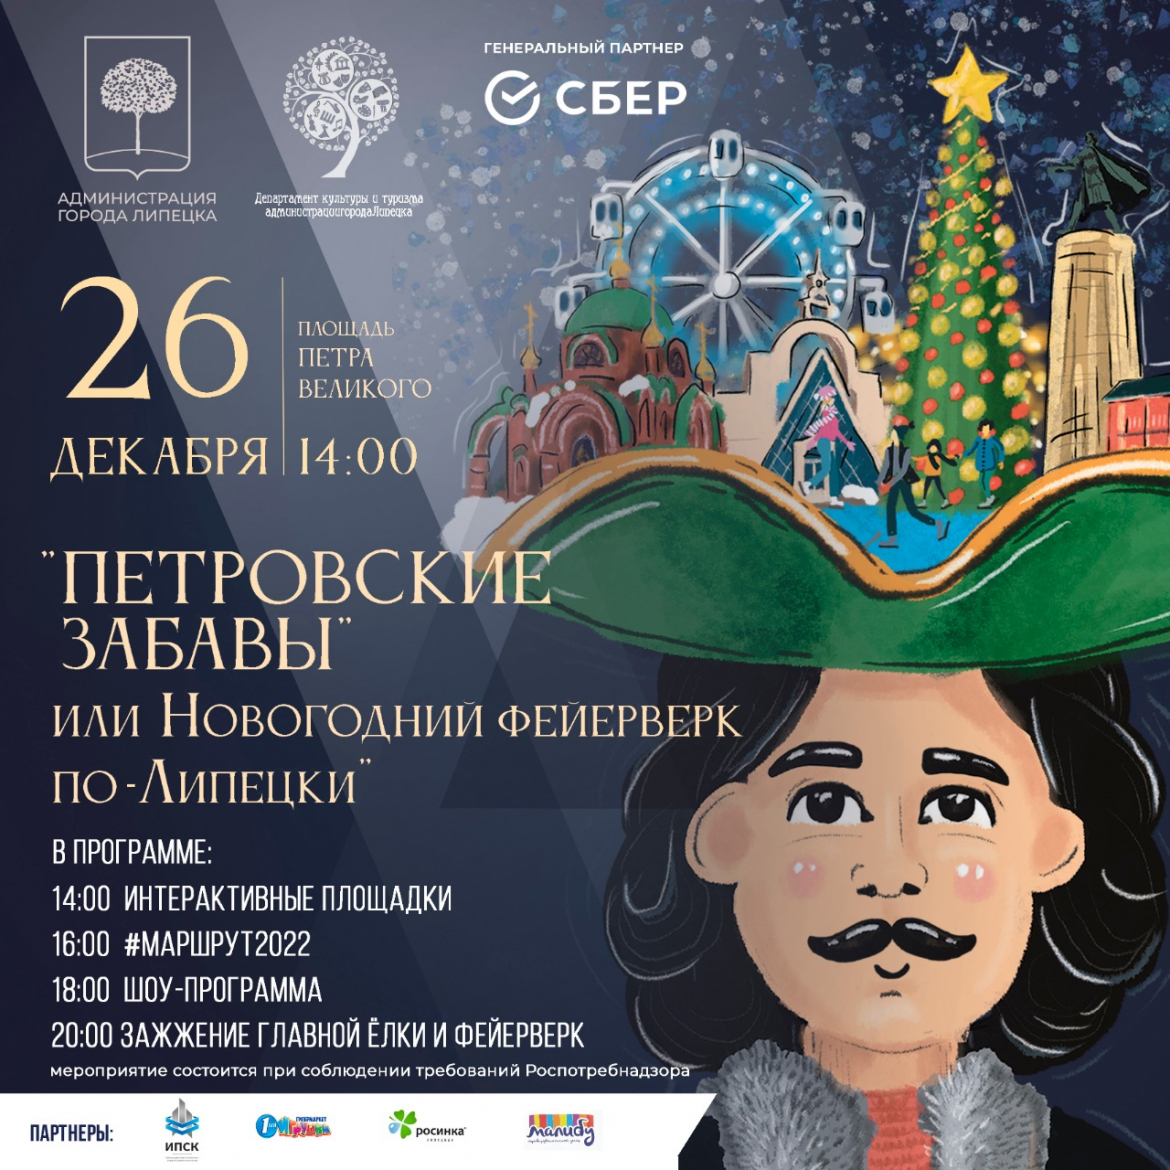 В городе анонсировали фестиваль «Петровские забавы»